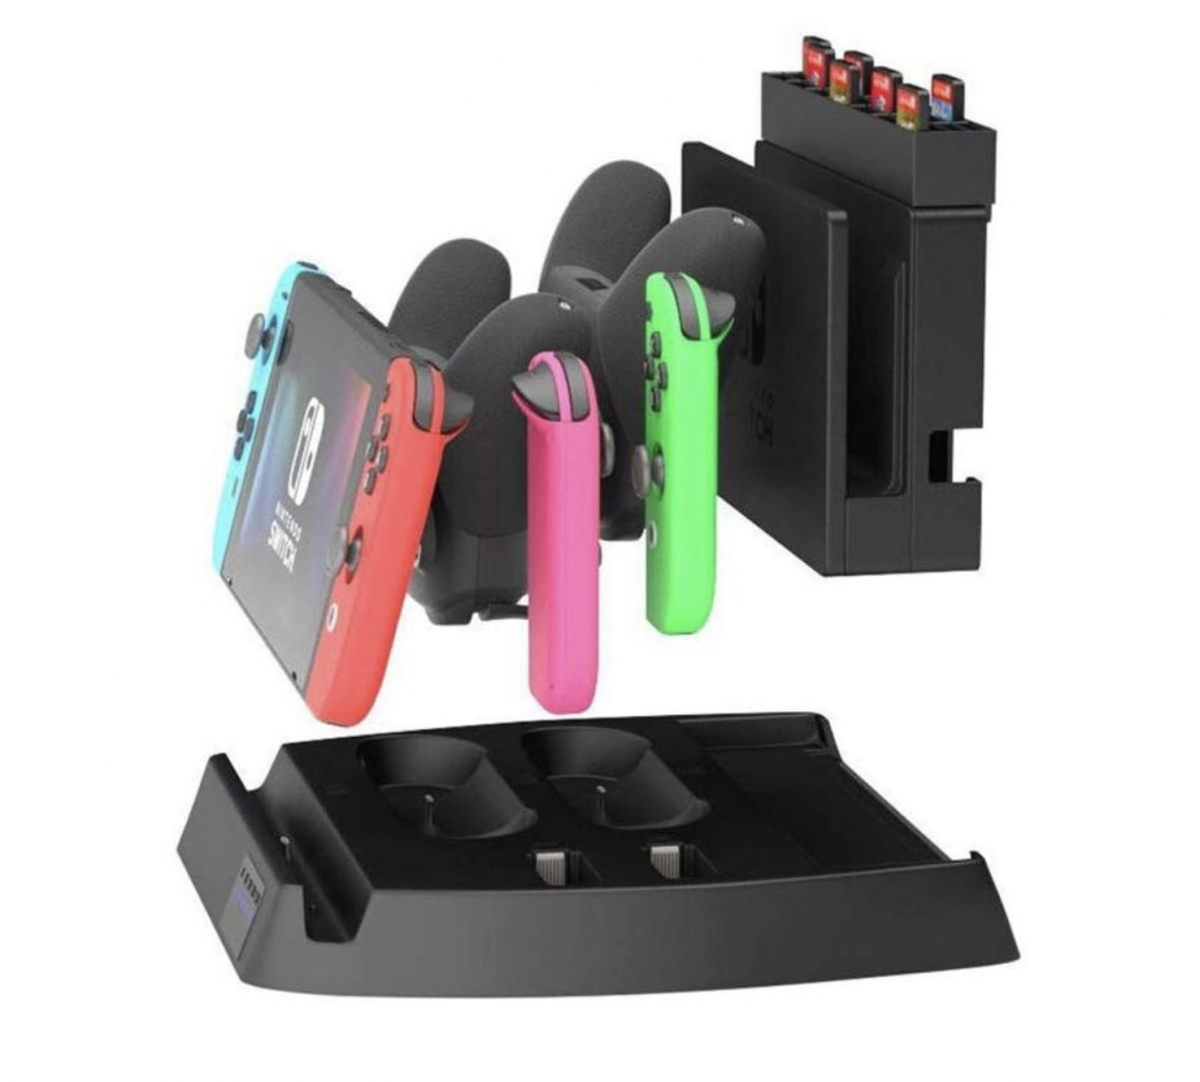 Подставка для зарядки Nintendo Switch и аксессуаров, зарядка joy-cons и pro контроллеров, 4 в 1 универсальная зарядка для нинтендо свитч, джойконов и контроллеров гемйпадов